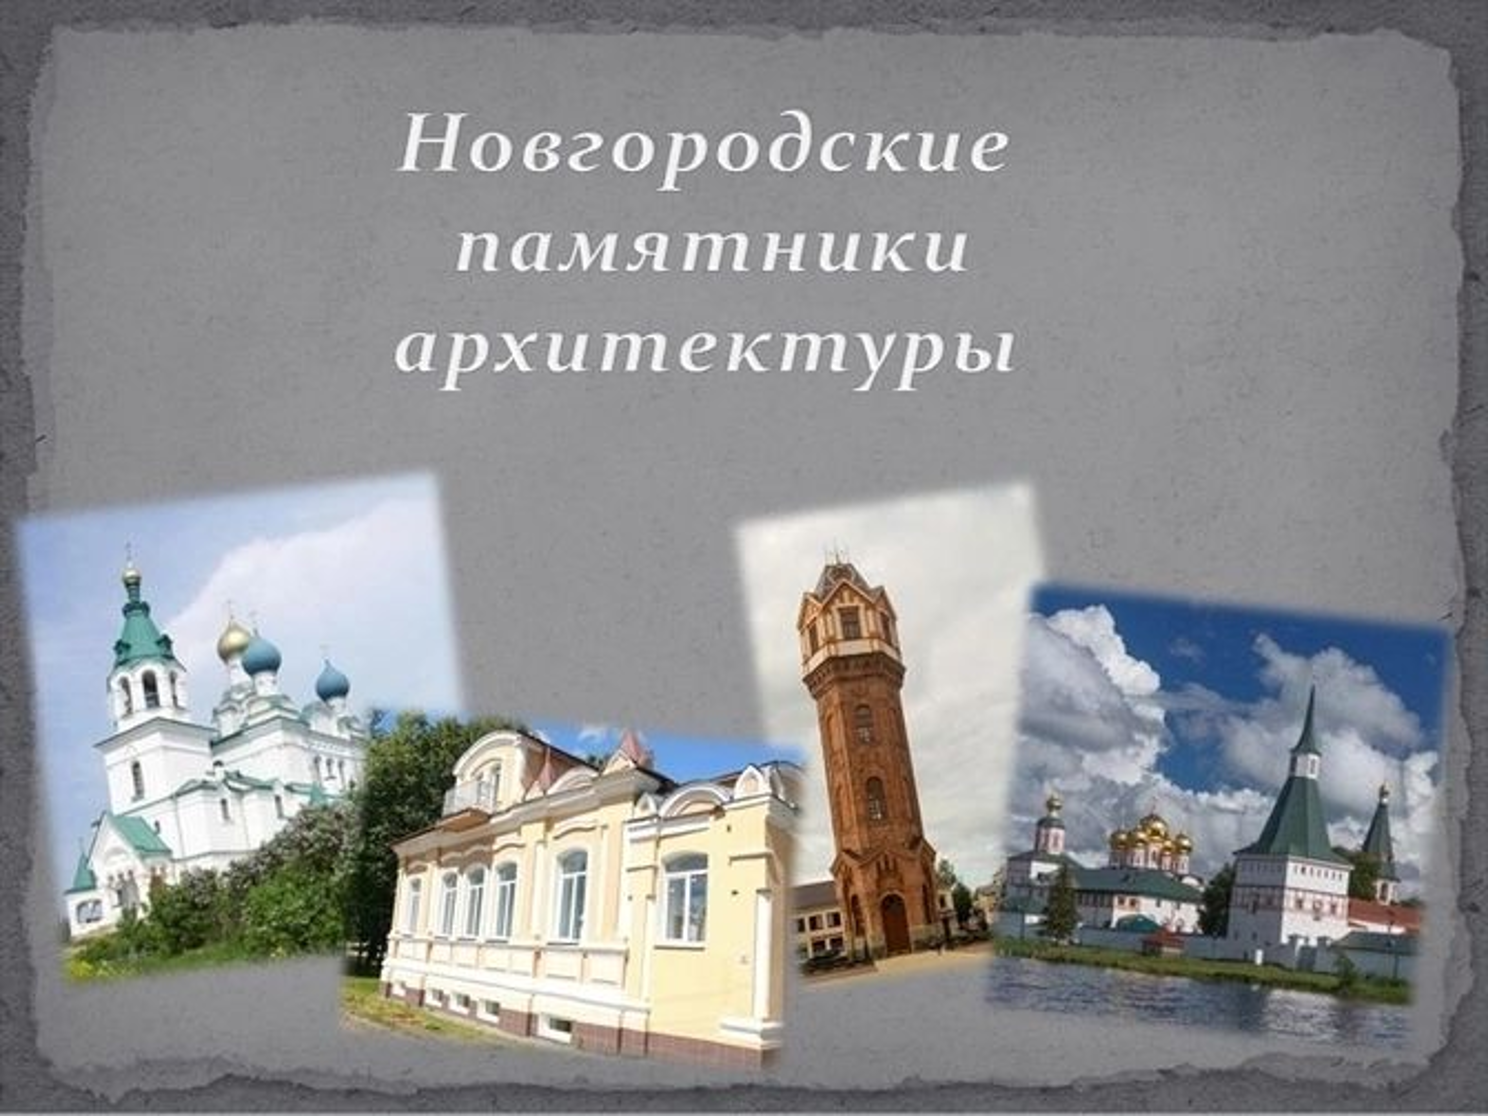 Проект "Новгородские памятники архитектуры" познакомит вас с достопримечательностями региона